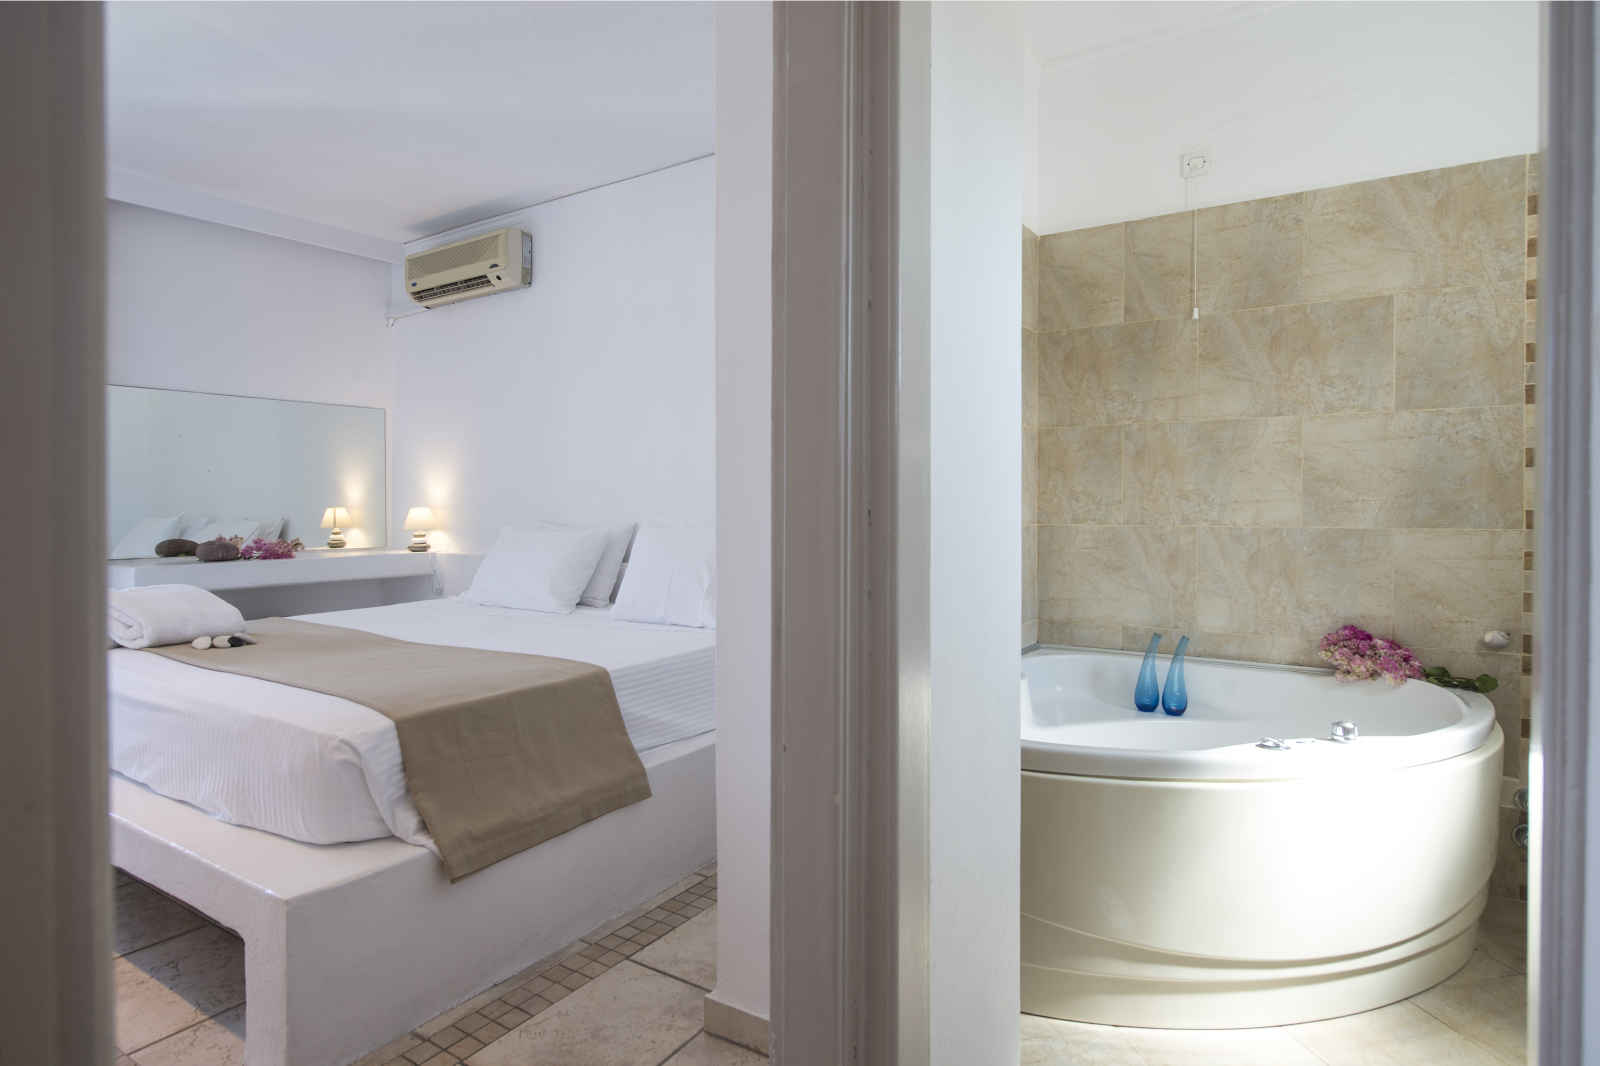 Grèce - Iles grecques - Les Cyclades - Paros - Hôtel Kanale's Rooms & Suites 4*